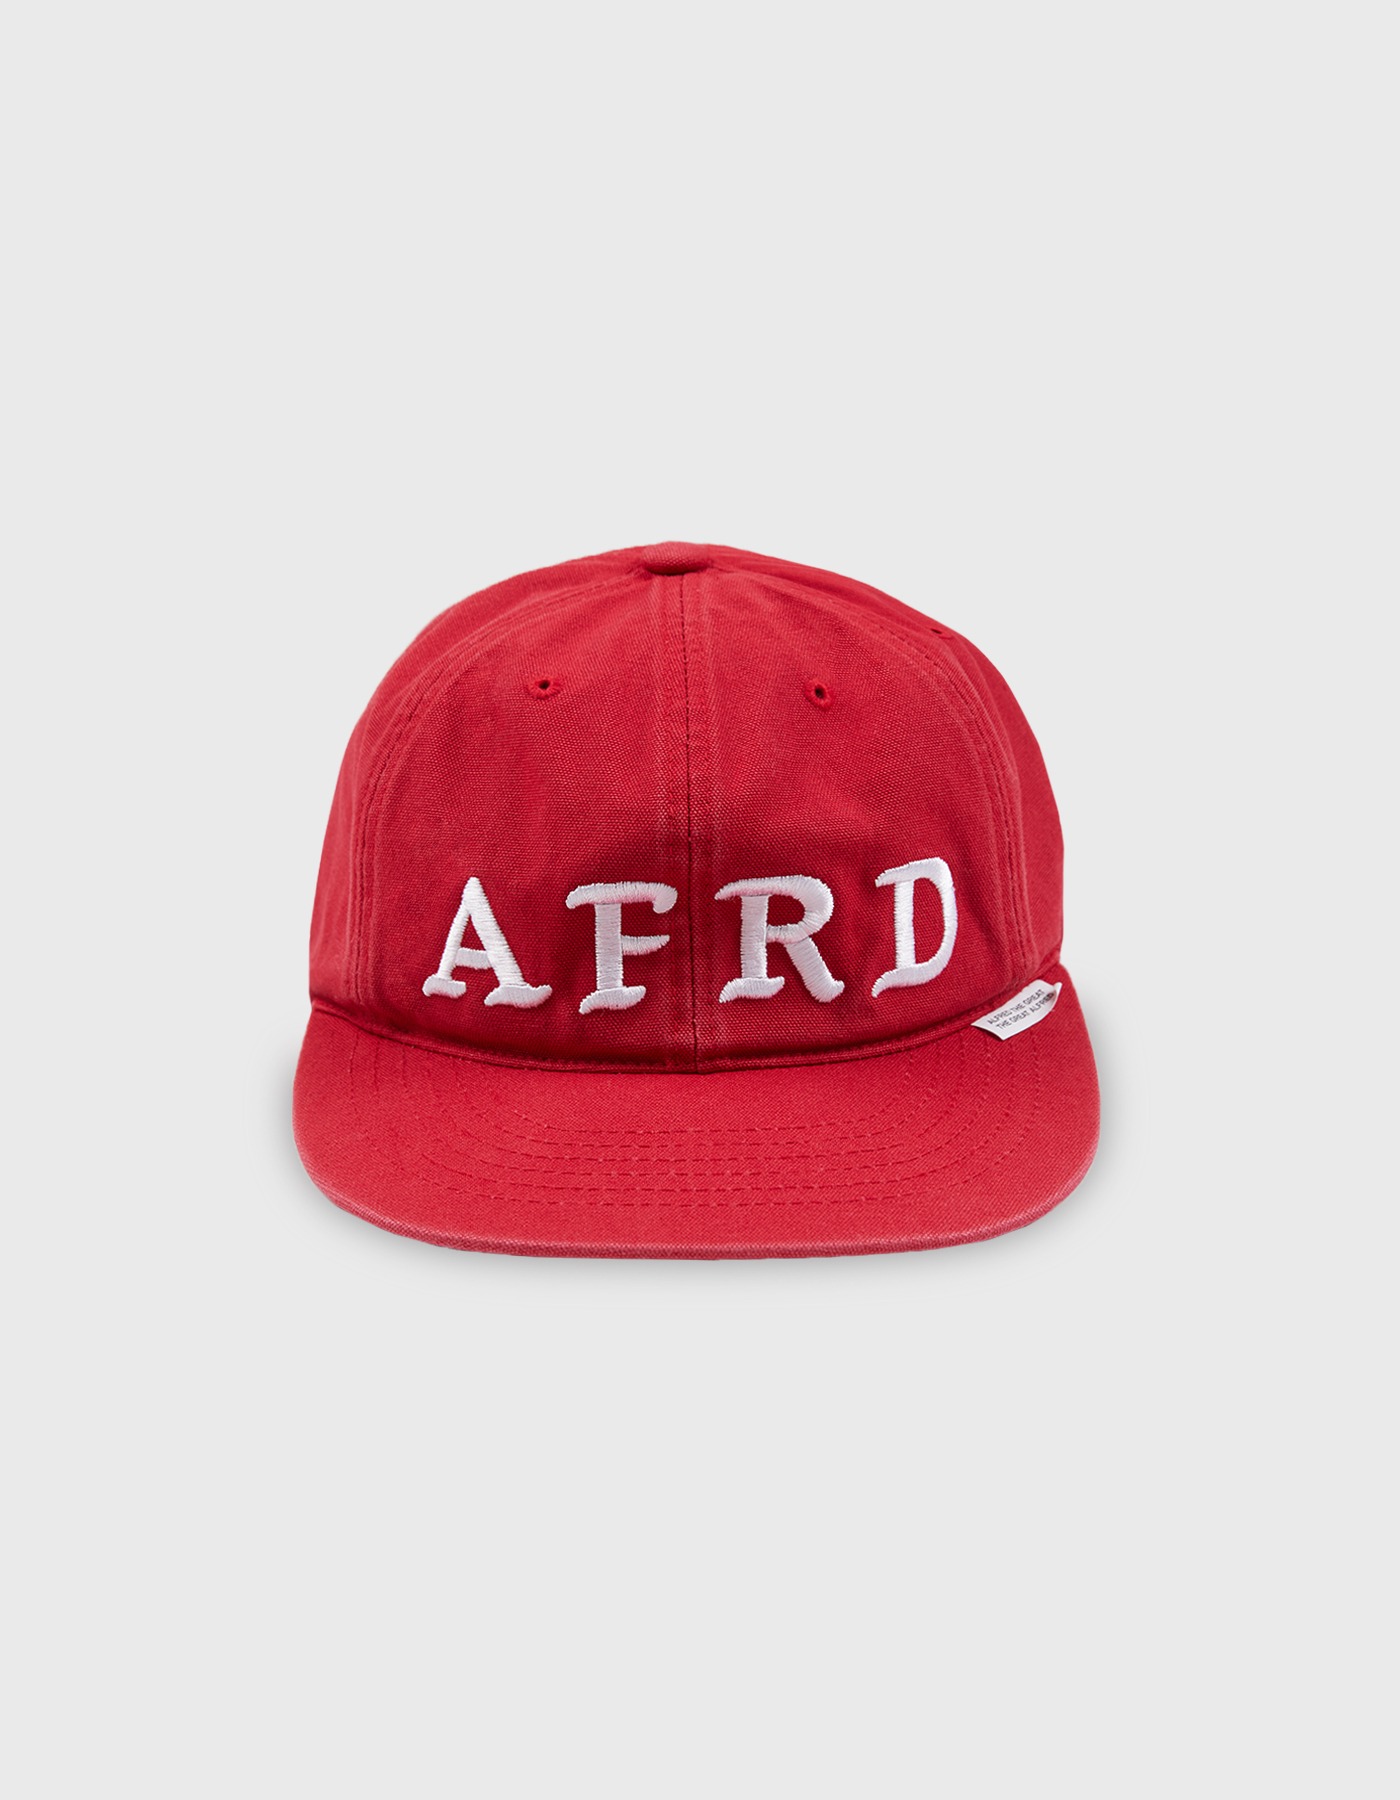 AFRD CAP / Red